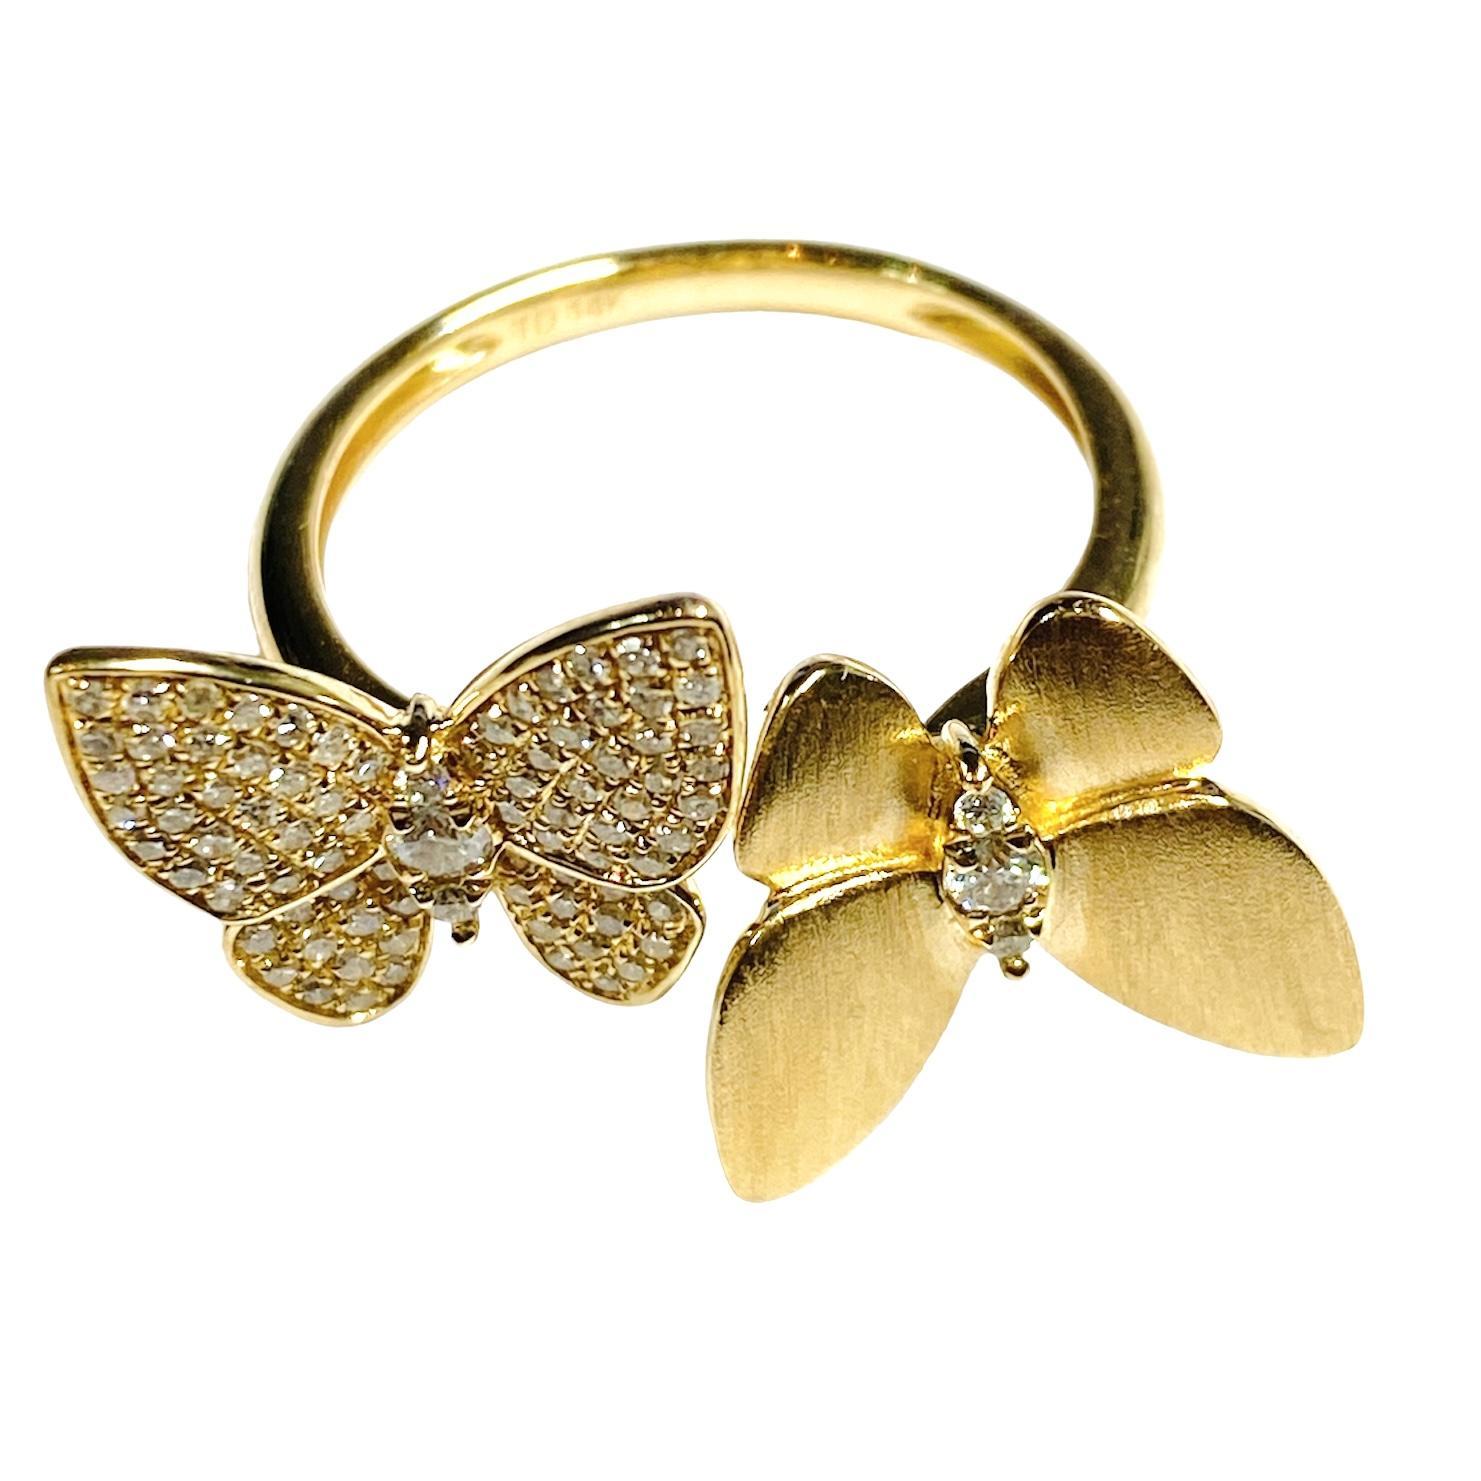 Der 14K Cuff-Style Natural Diamond Butterfly Ring ist ein einzigartig gestaltetes und elegantes Schmuckstück, das die zarte Schönheit eines Schmetterlings mit dem Luxus natürlicher Diamanten verbindet.
Gefertigt aus hochwertigem 14-karätigem